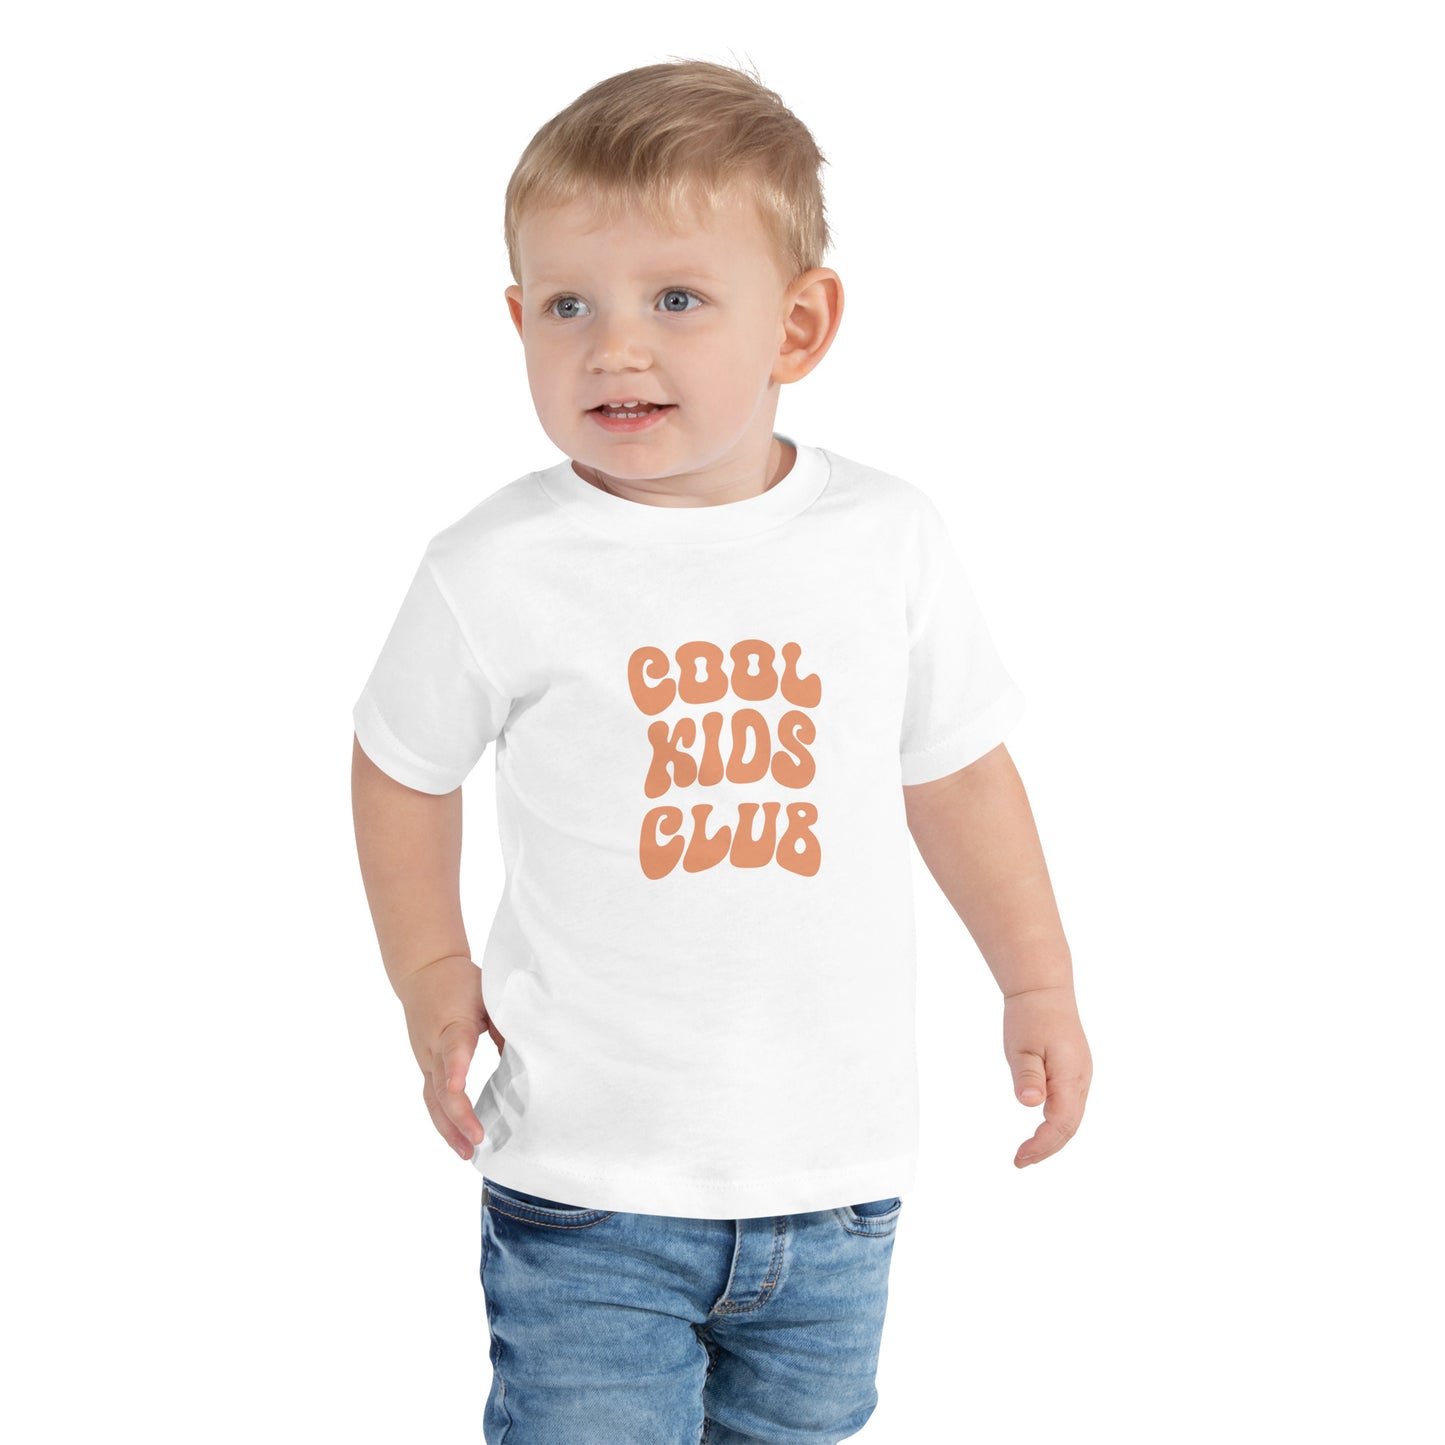 نادي الأطفال الرائعين - قميص بأكمام قصيرة للأطفال